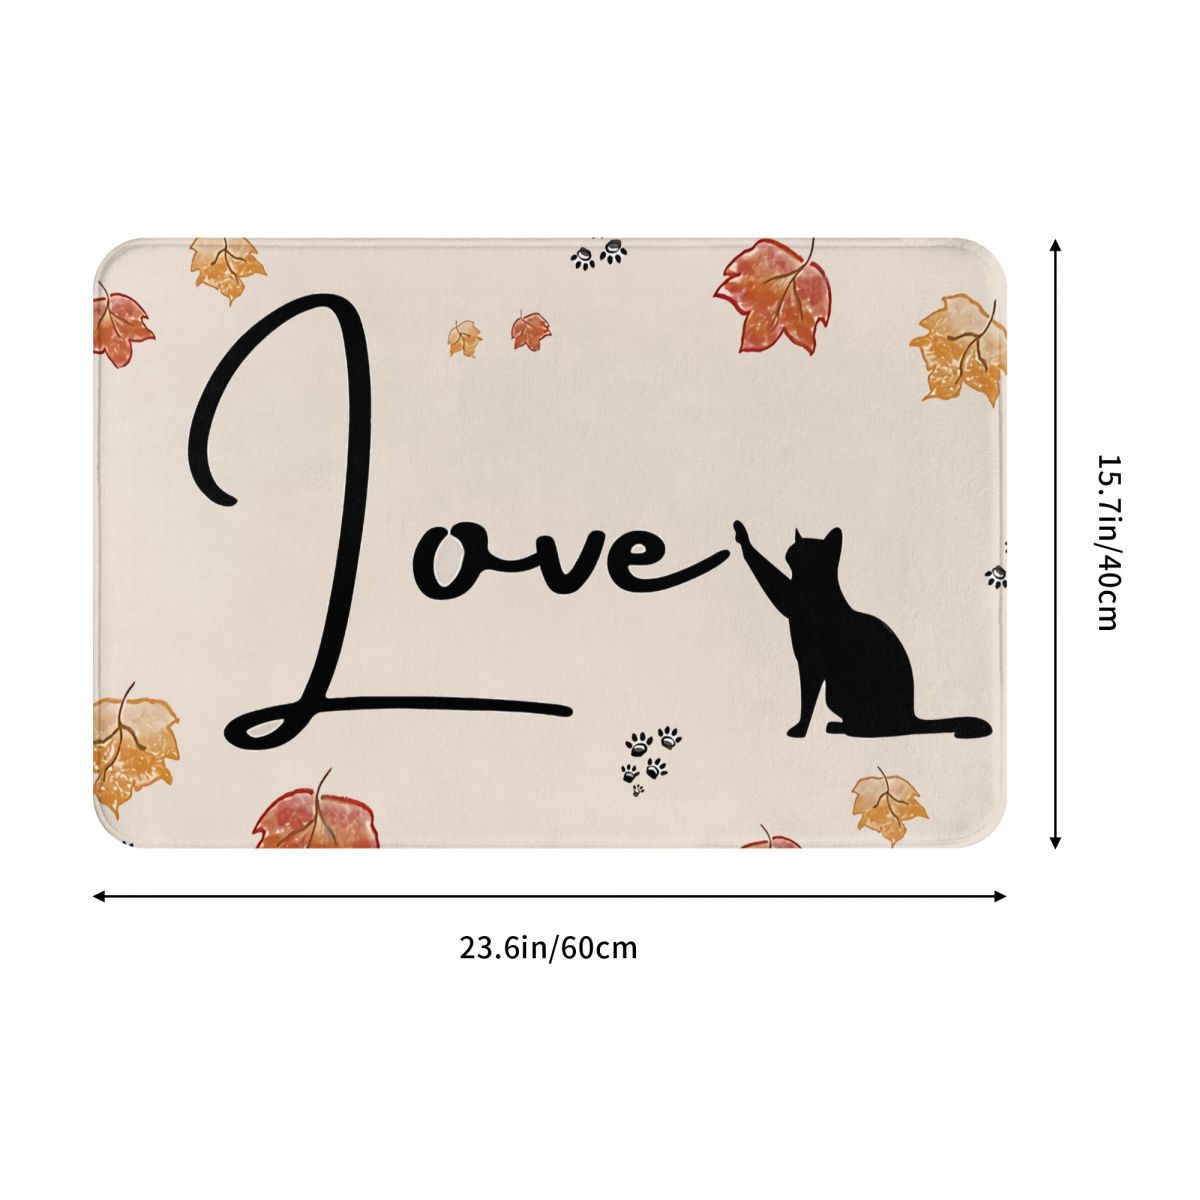 Spooky Black Cat Love Non-Slip Indoor Doormat | Halloween Welcome Mat | Fall Season Home Decor Rug | Feline Friends Living Room Carpet